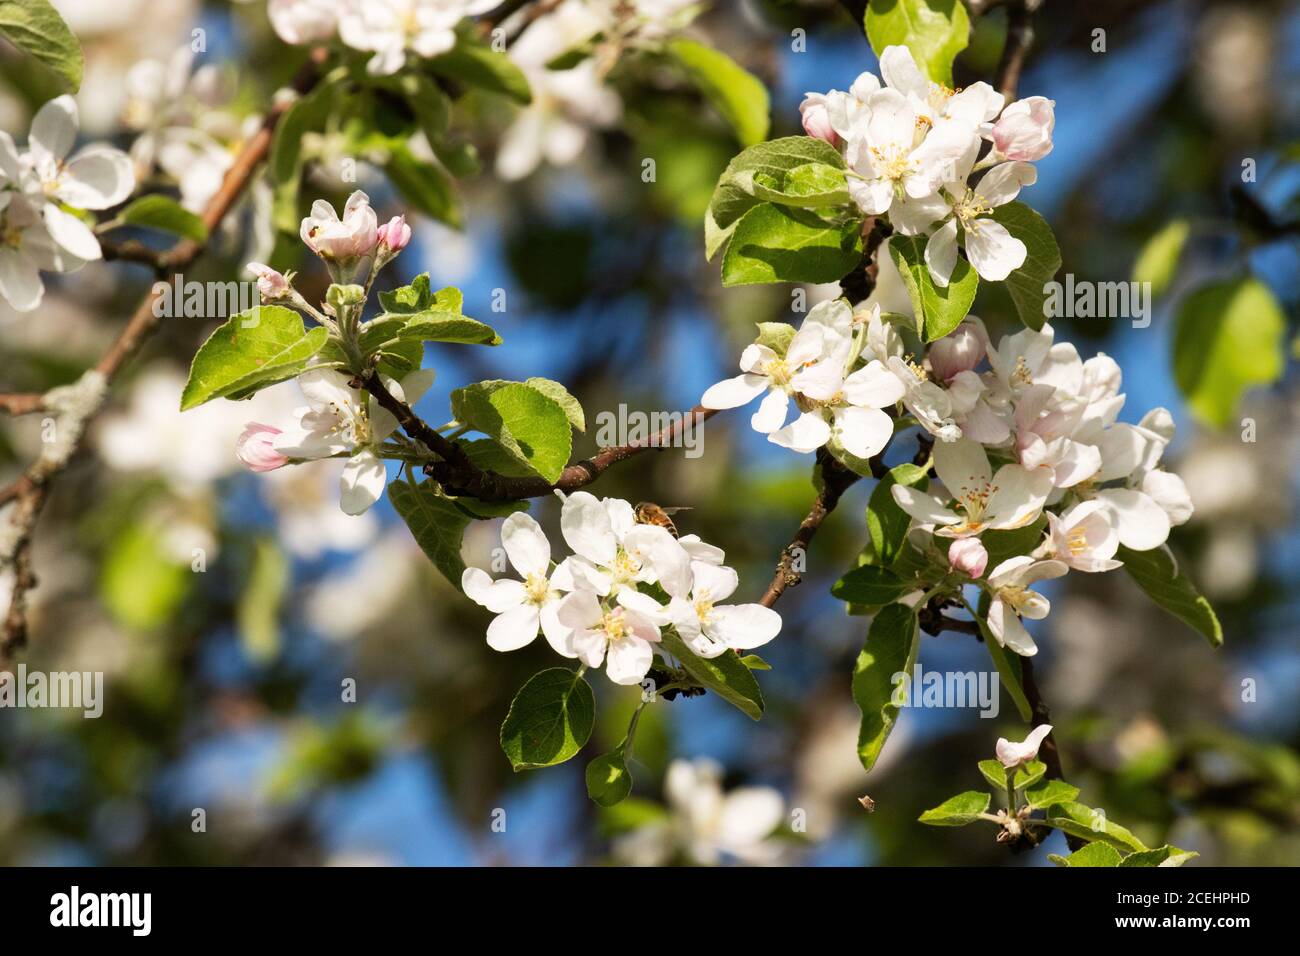 Un bell'albero di mele fiorito con fiori bianchi durante la primavera nella campagna dell'Estonia, Nord Europa. Foto Stock